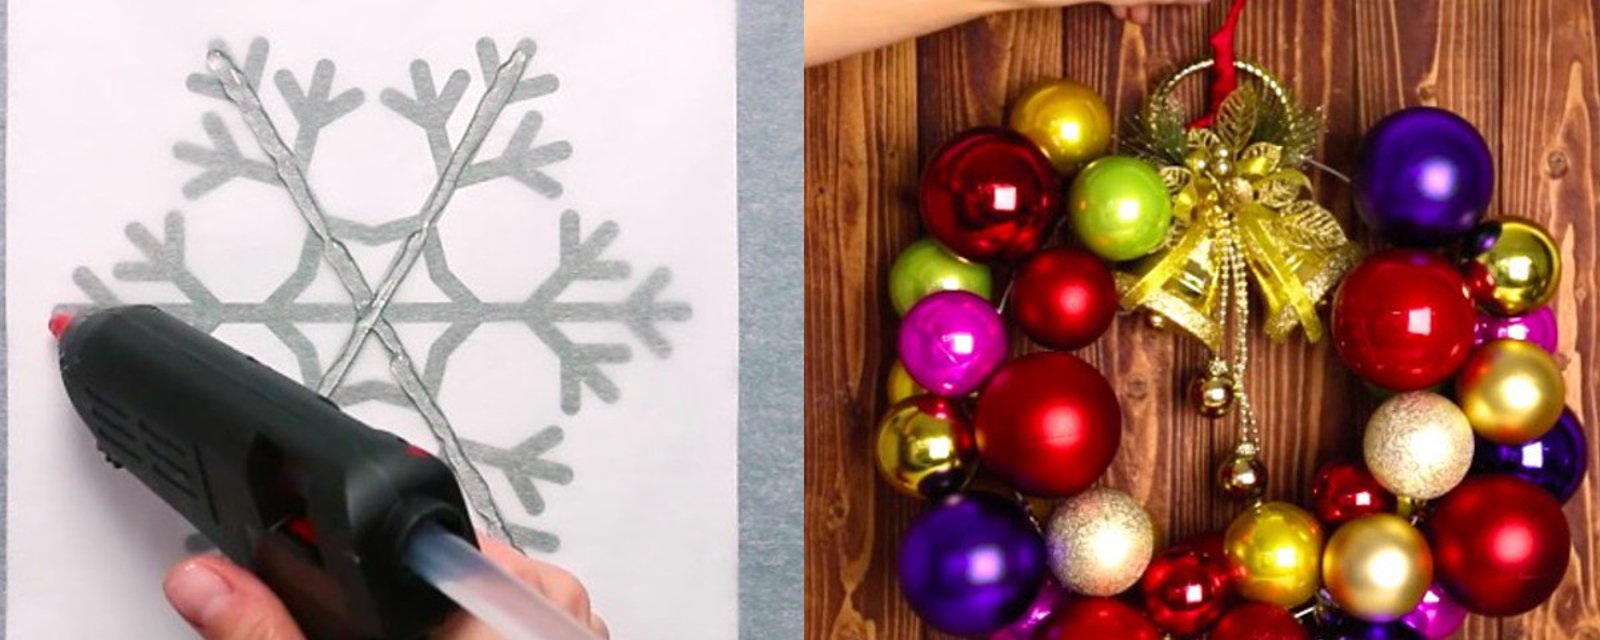 3 décorations de Noël super simples à bricoler en moins de 5 minutes chacune! 